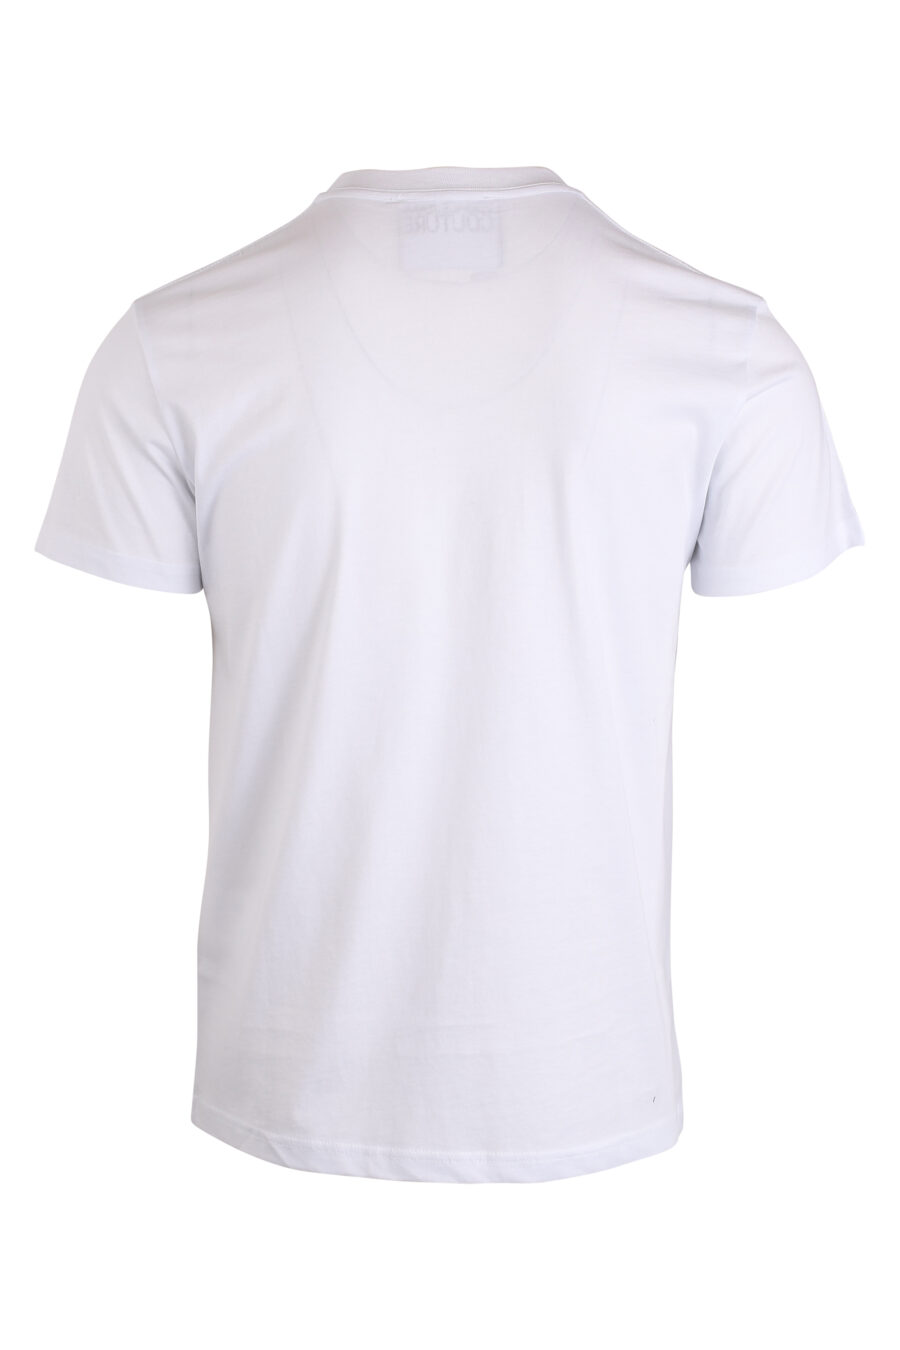 Camiseta blanca con logo redondo pequeño dorado - IMG 4211